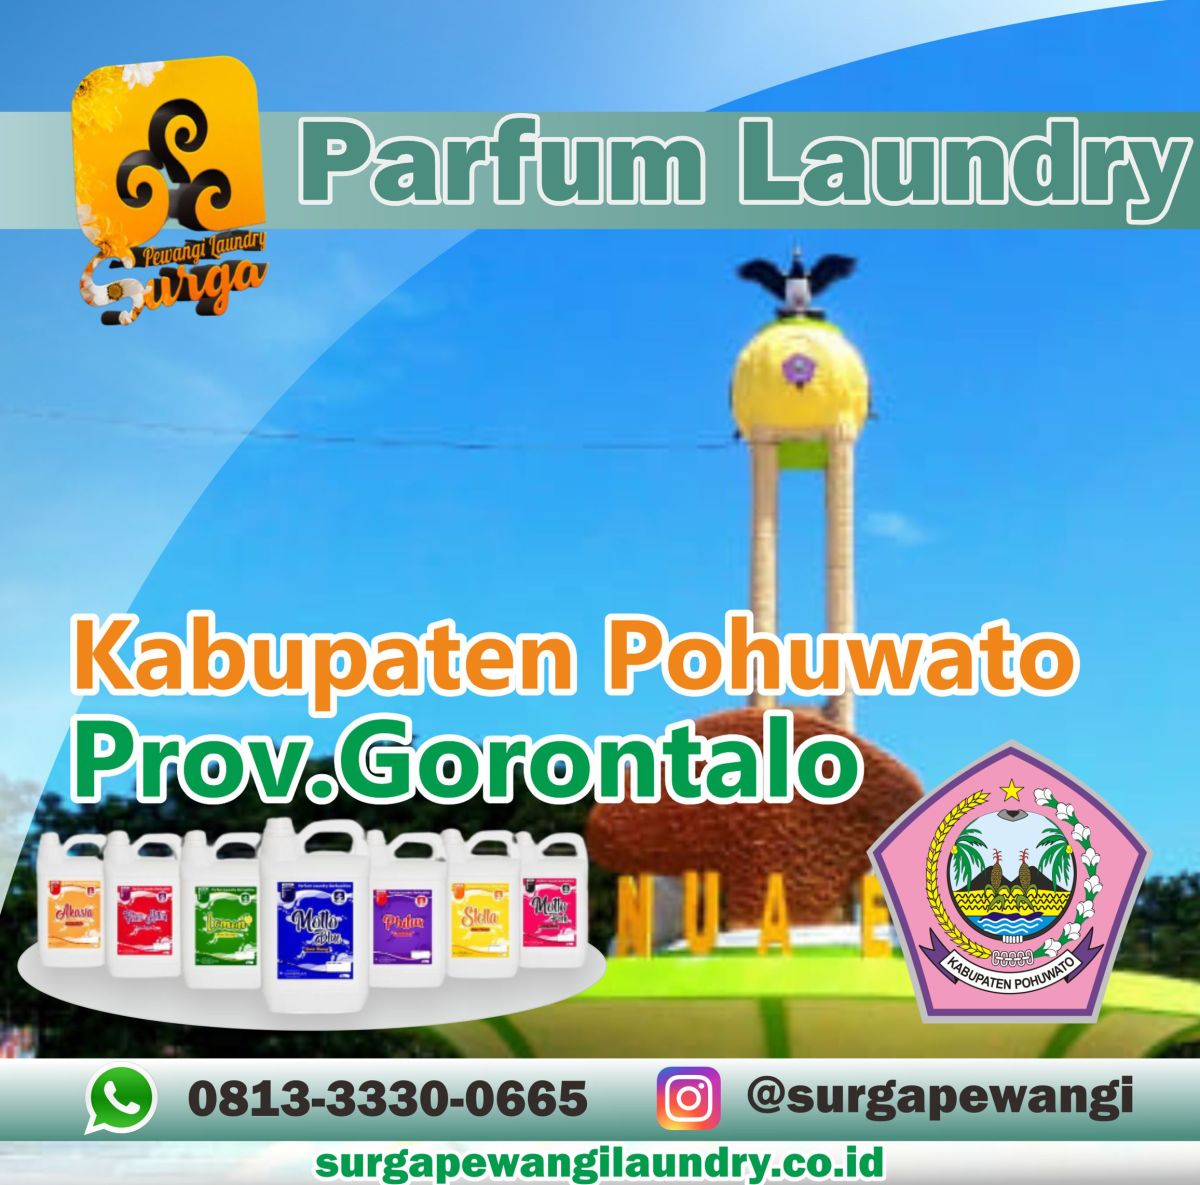 Parfum Laundry Kabupaten Pohuwato, Gorontalo